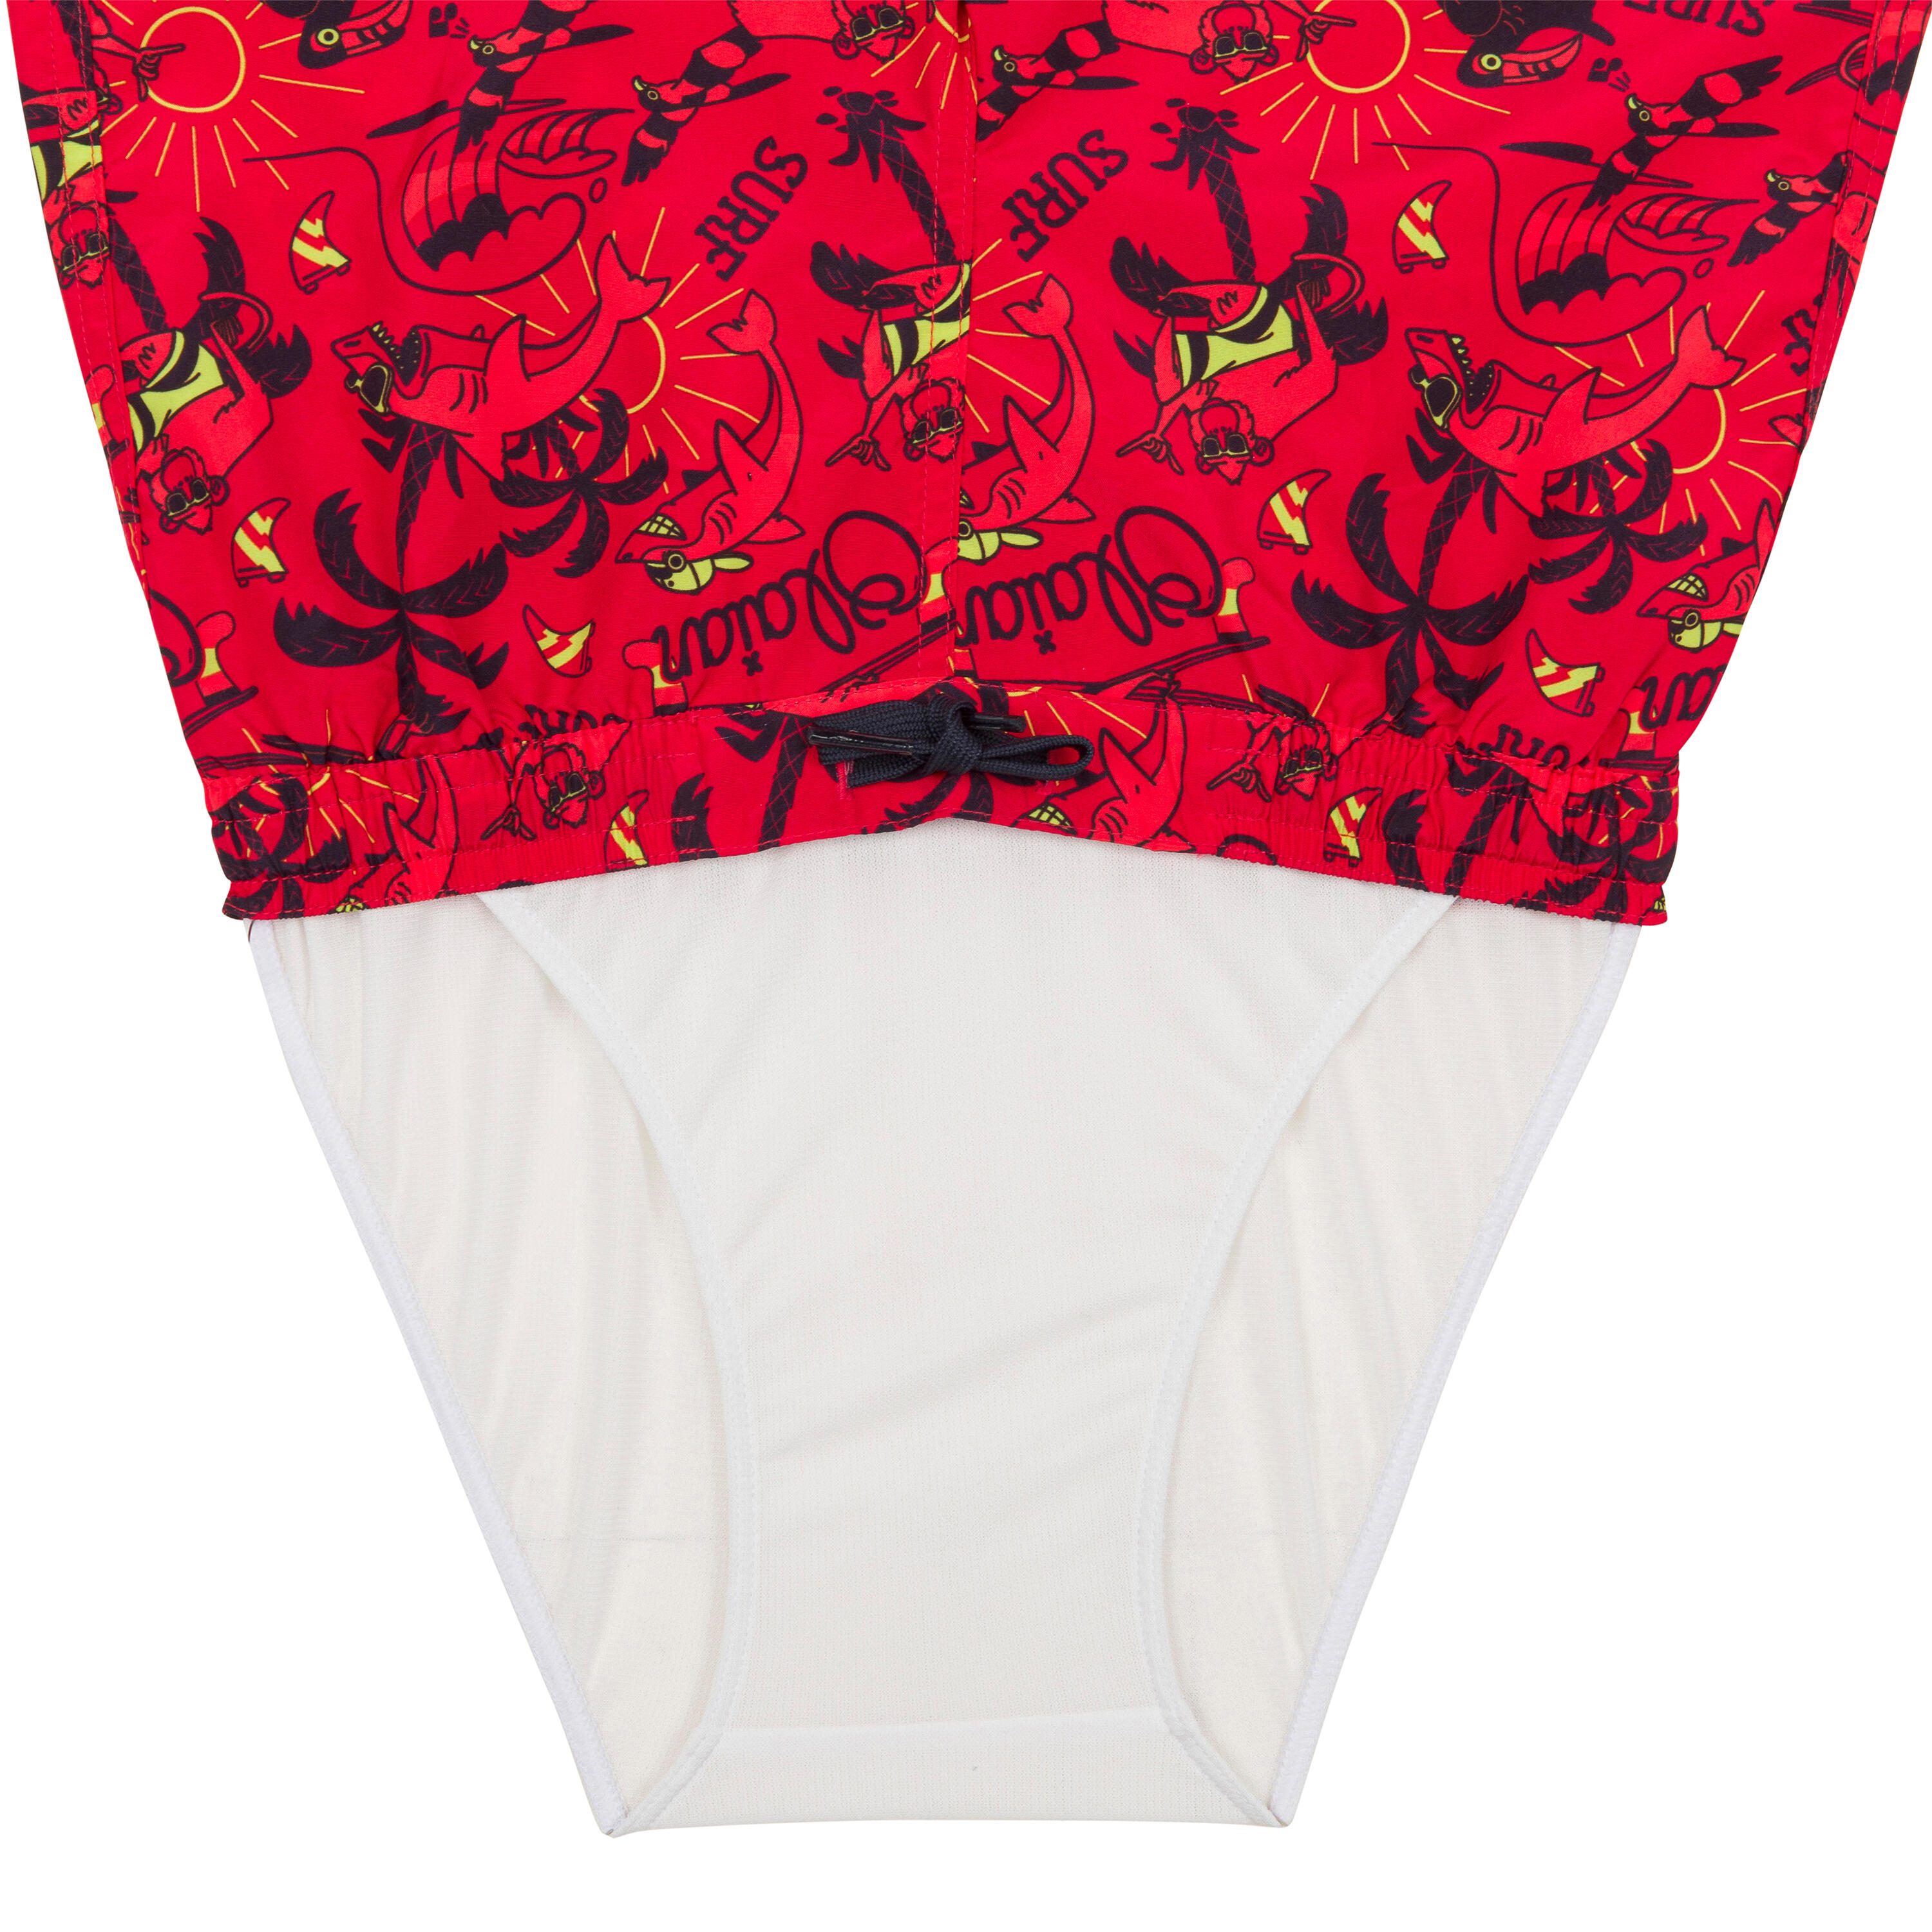 Boy's swim shorts - 100 happysurf red 3/3